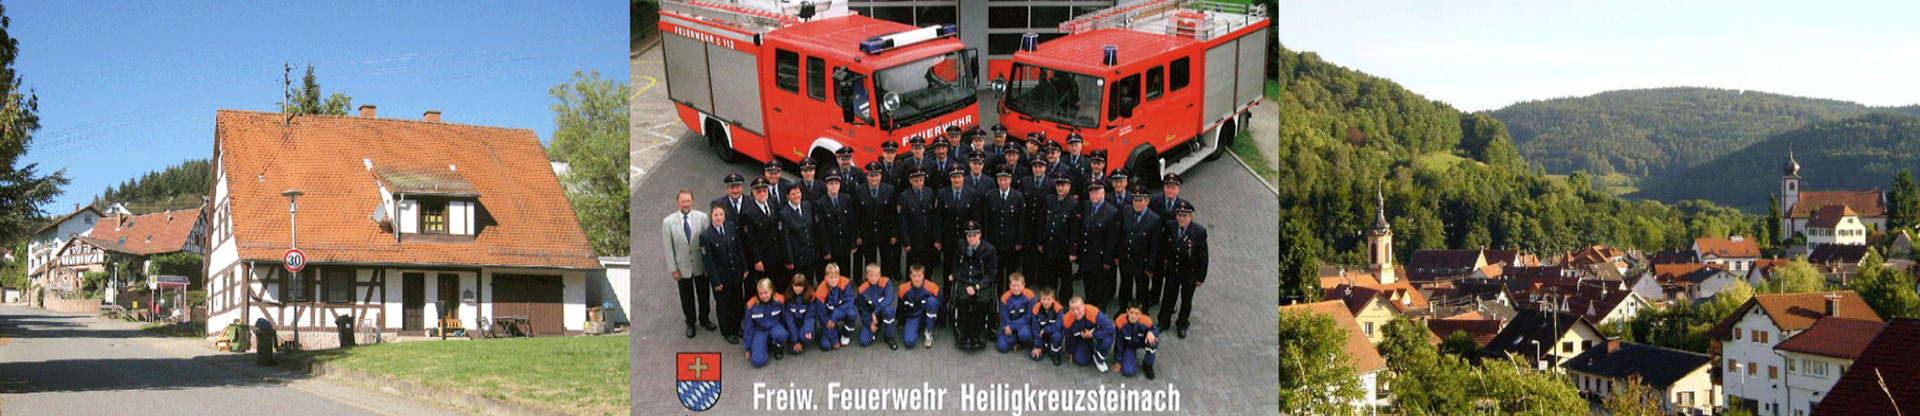 Bild der Mannschaft der Freiwilligen Feuerwehr Heiligkreuzsteinach